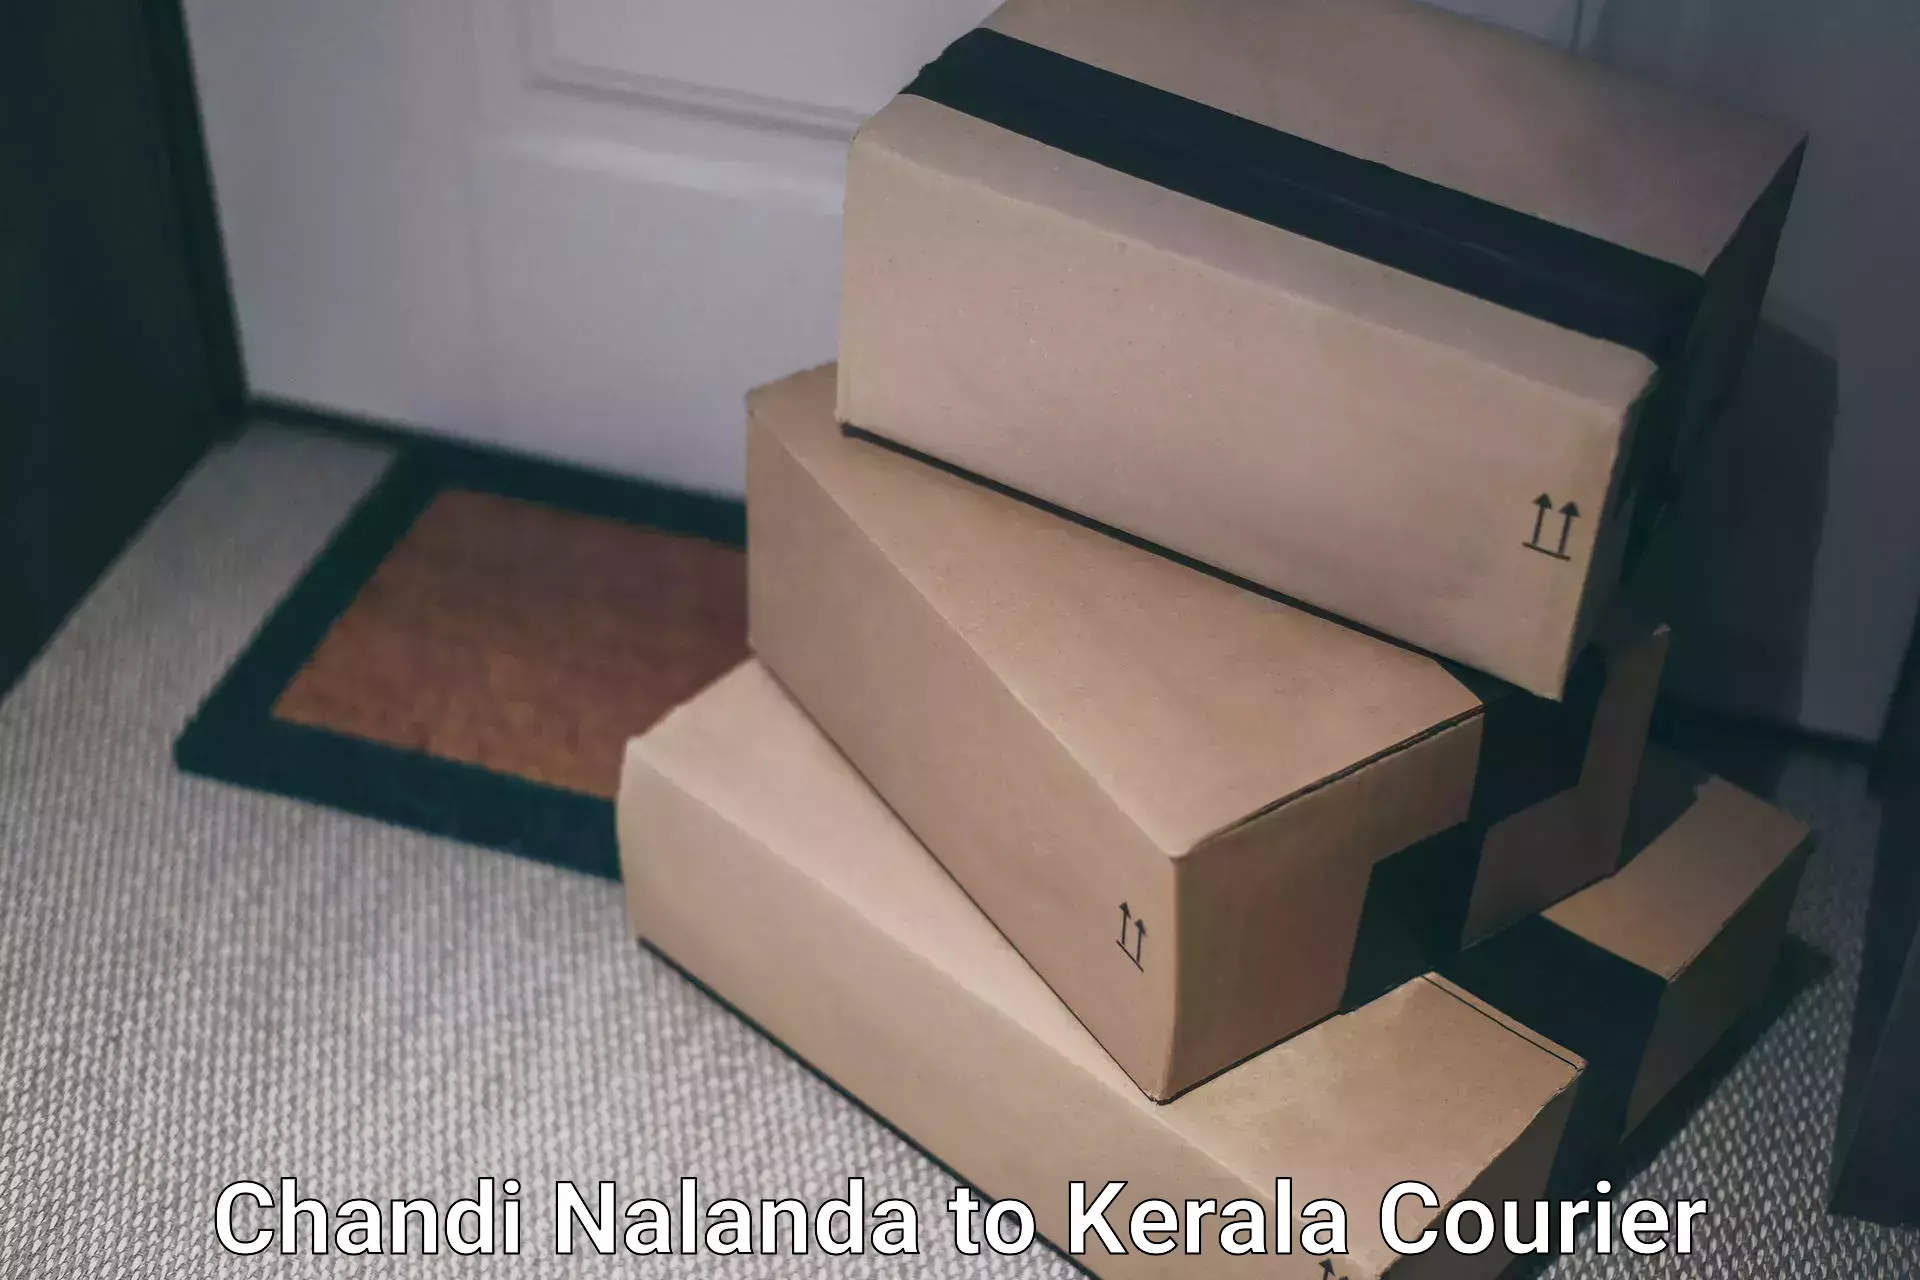 Reliable logistics providers Chandi Nalanda to Balussery